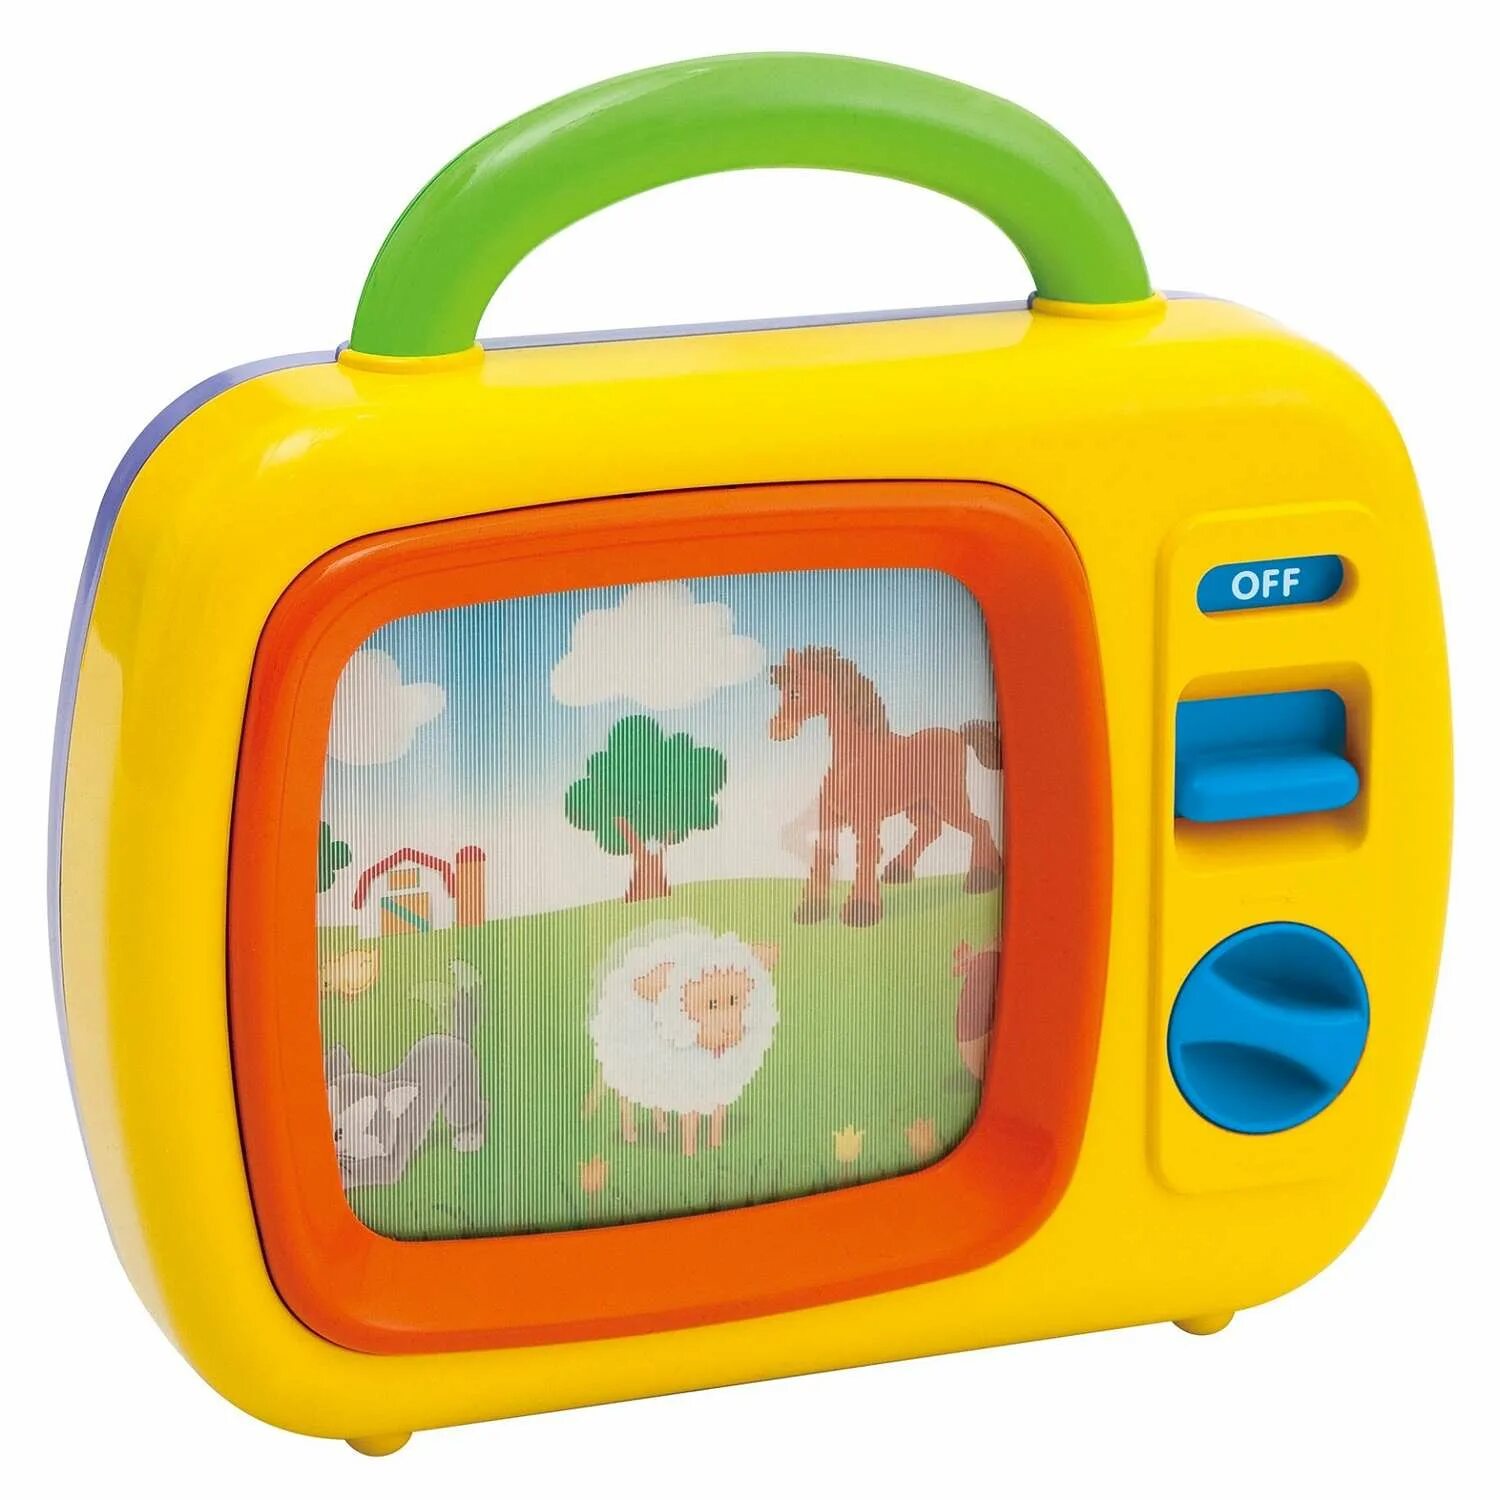 Интерактивная развивающая игрушка PLAYGO my first TV. Игрушечный телевизор. Игрушечный телевизор для детей. Детские телевизоры в игрушке.